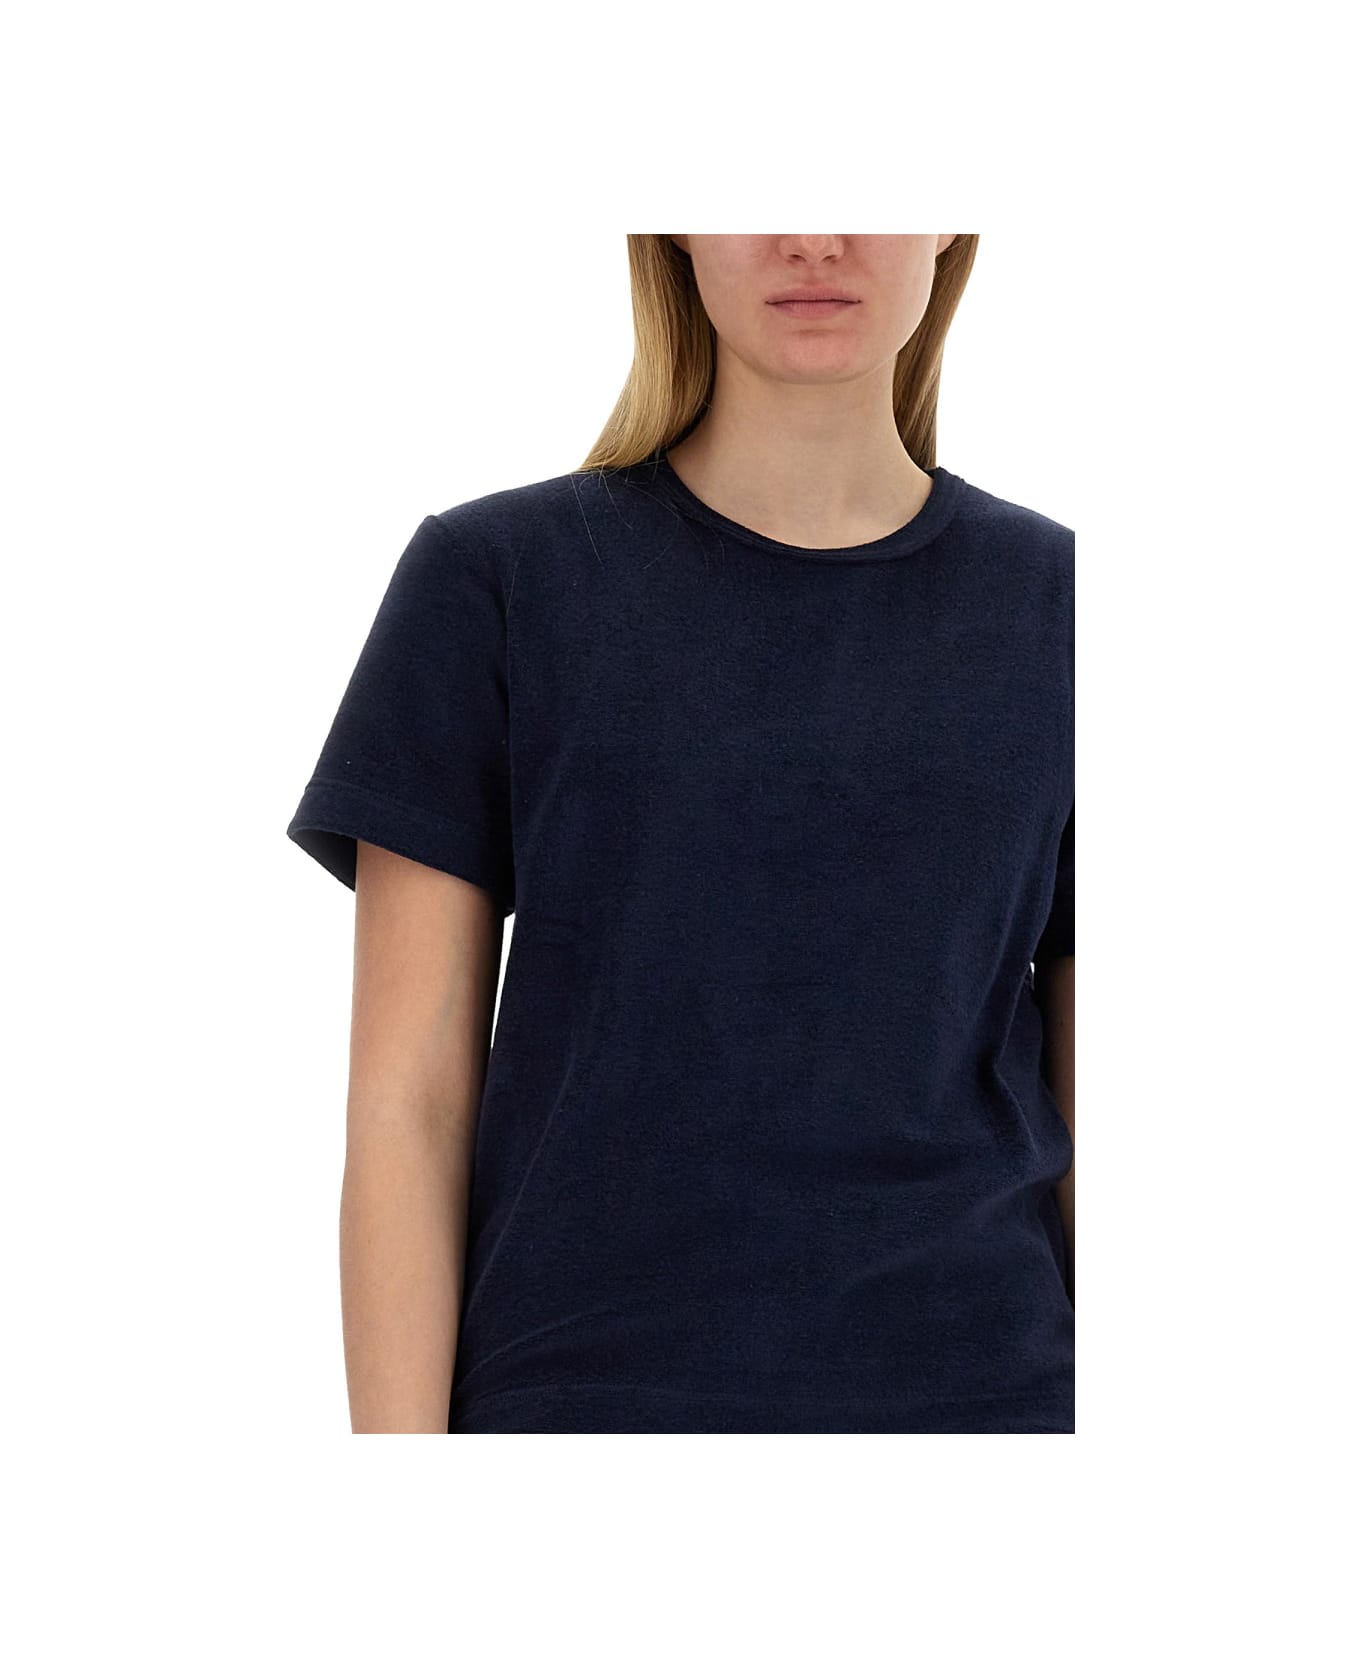 Howlin Cotton Blend T-shirt - BLUE